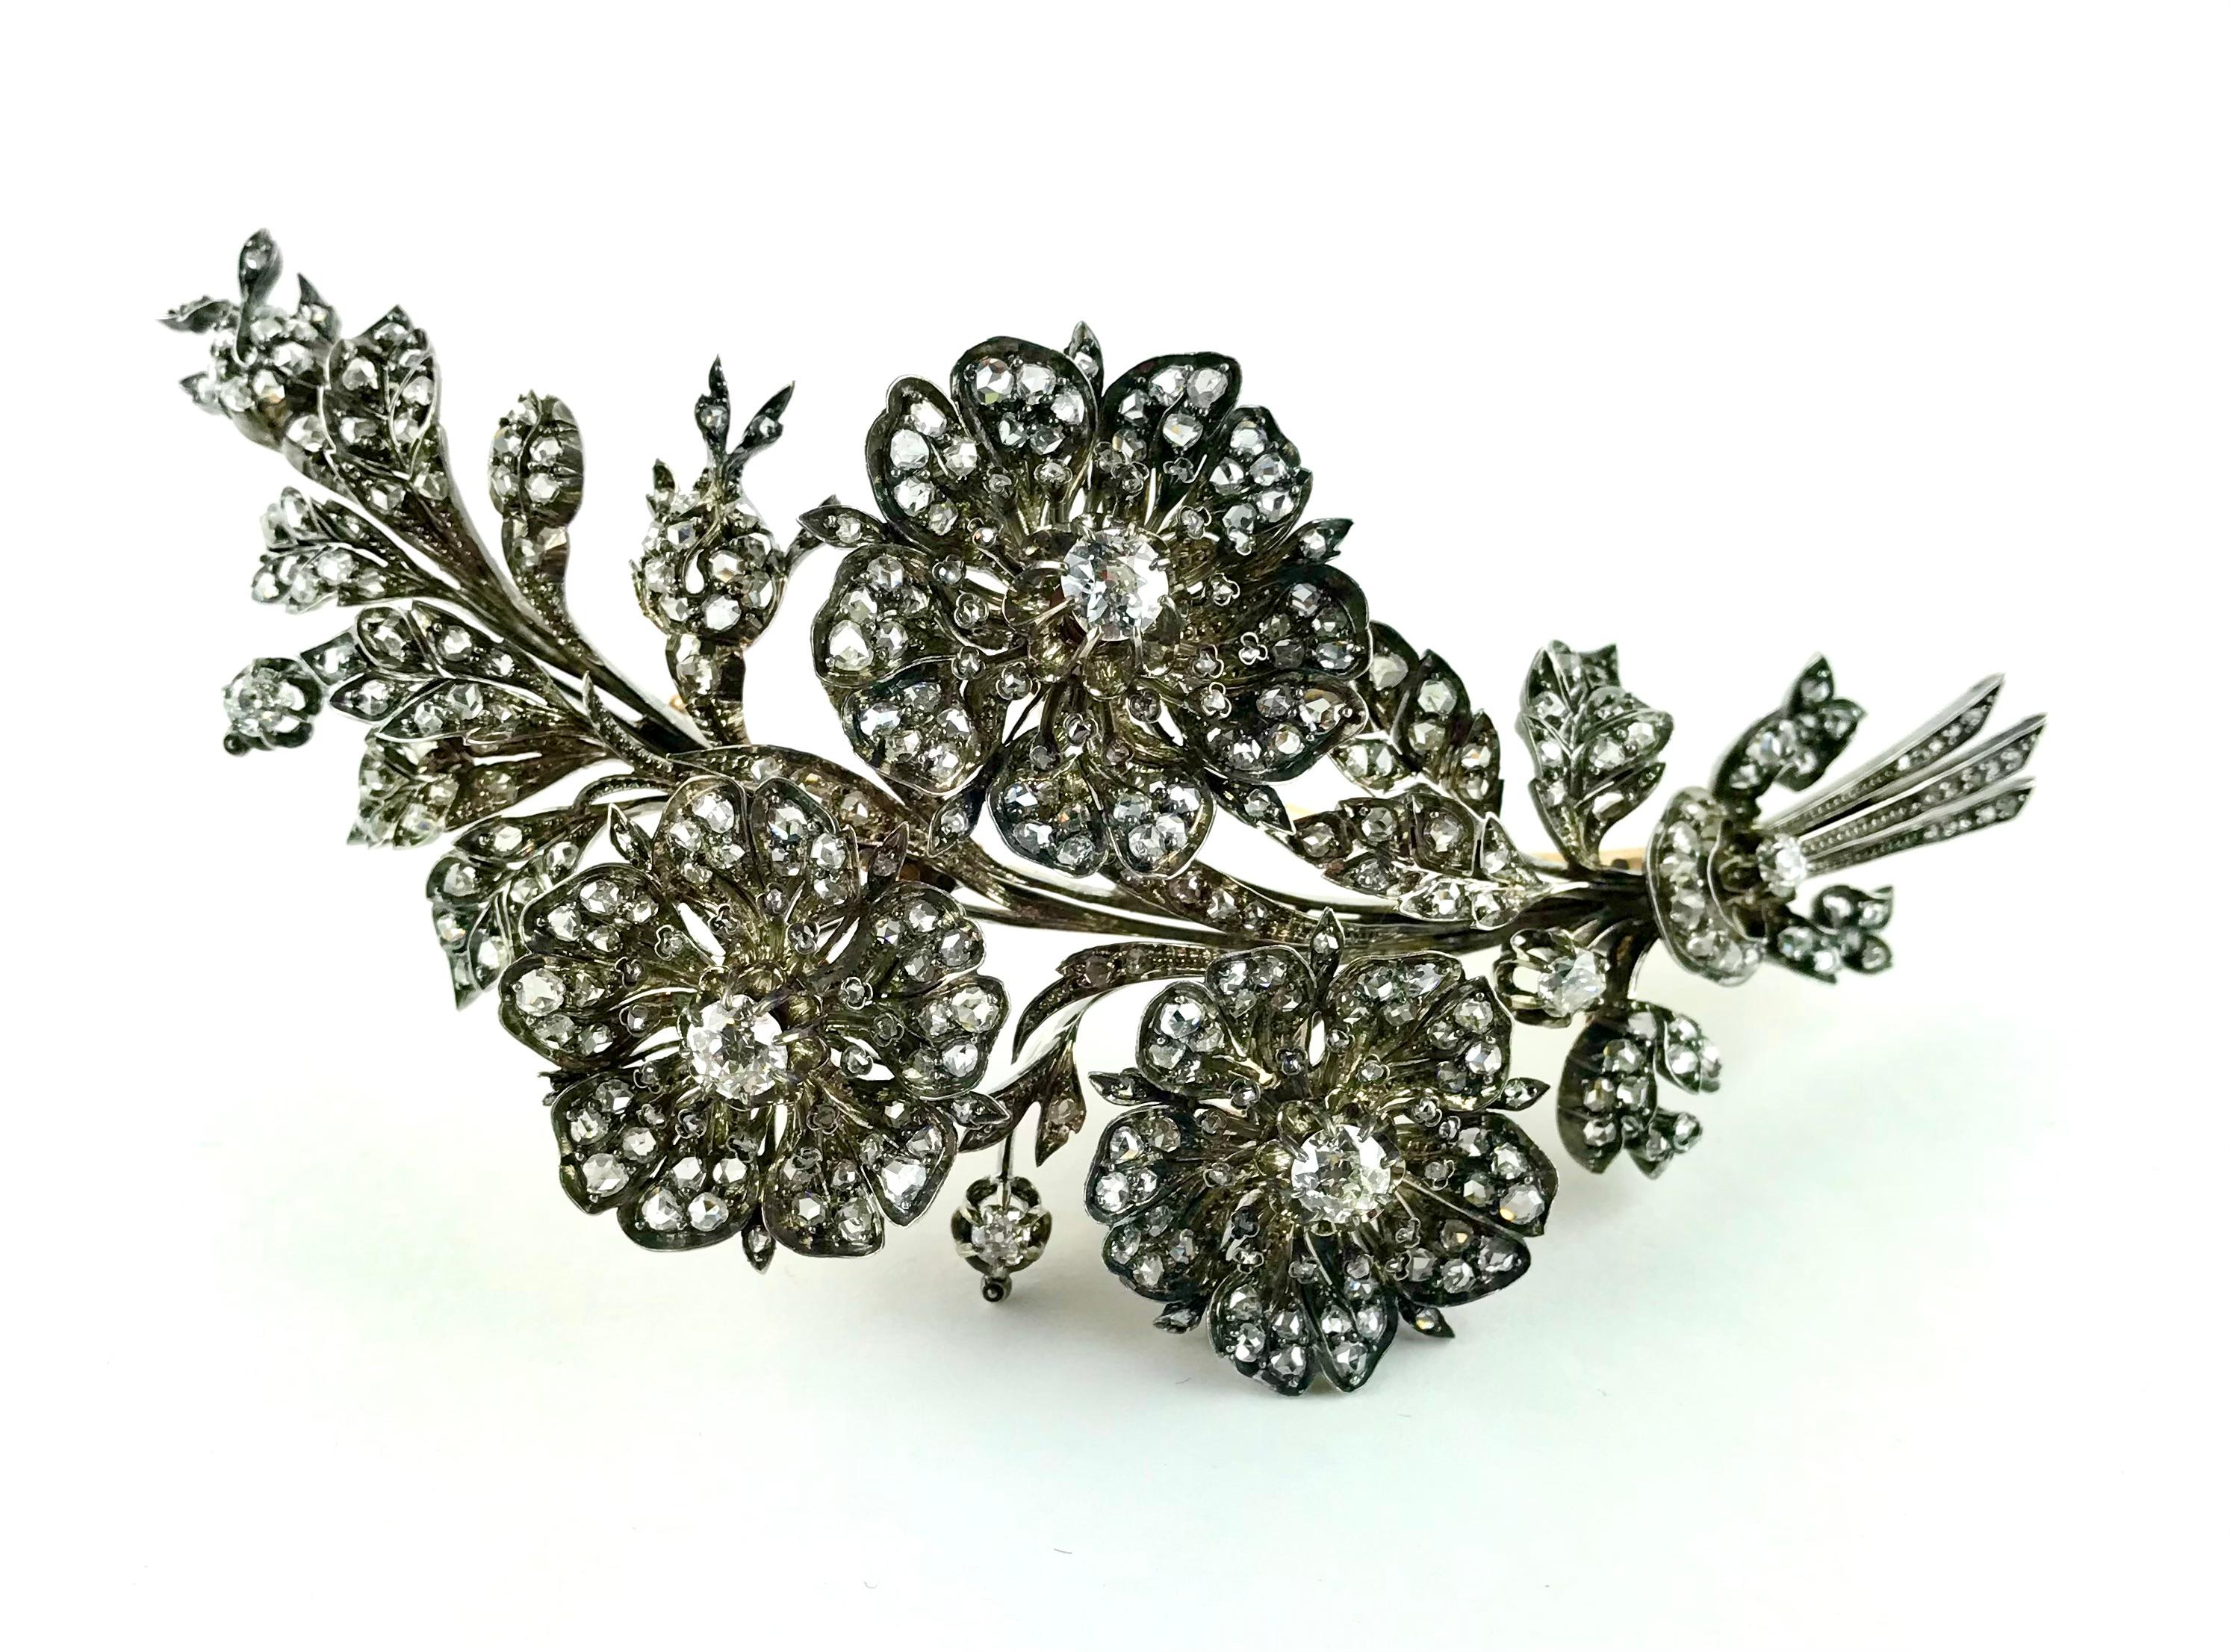 Beeindruckende und auffällige Brosche aus den 1820er Jahren mit Diamantspray, bestehend aus einem Zweig mit drei Blumen, Knospen und Blattwerk, die in Paris in 18 Karat Gold und Silber gefertigt wurde. In die Blütenblätter und Blätter dieser